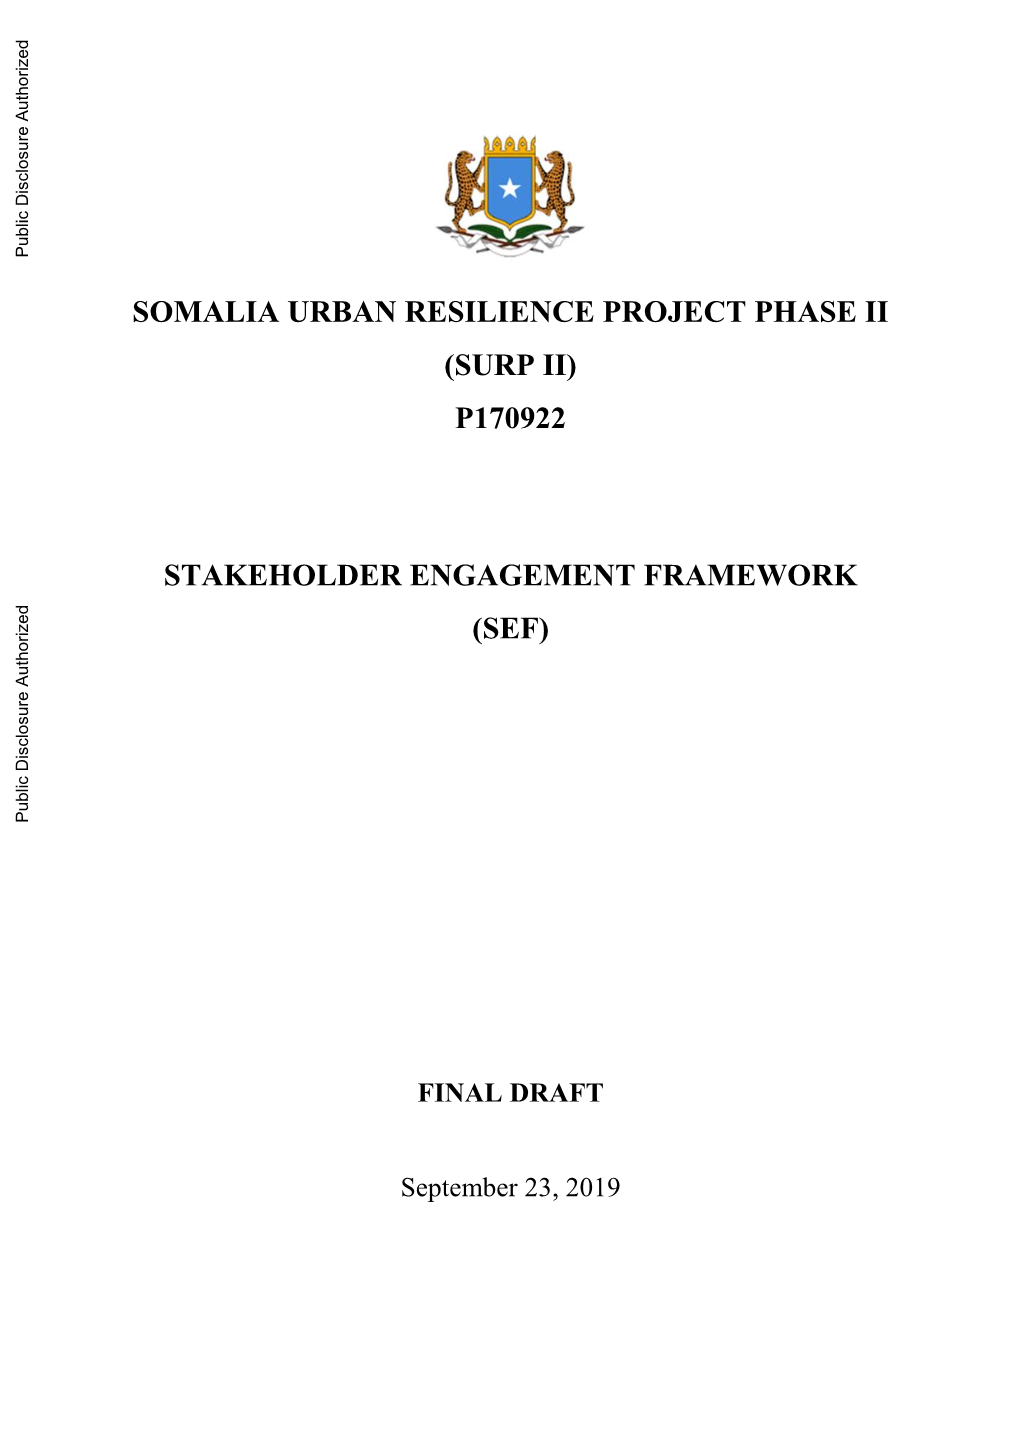 P170922 Stakeholder Engagement Framework